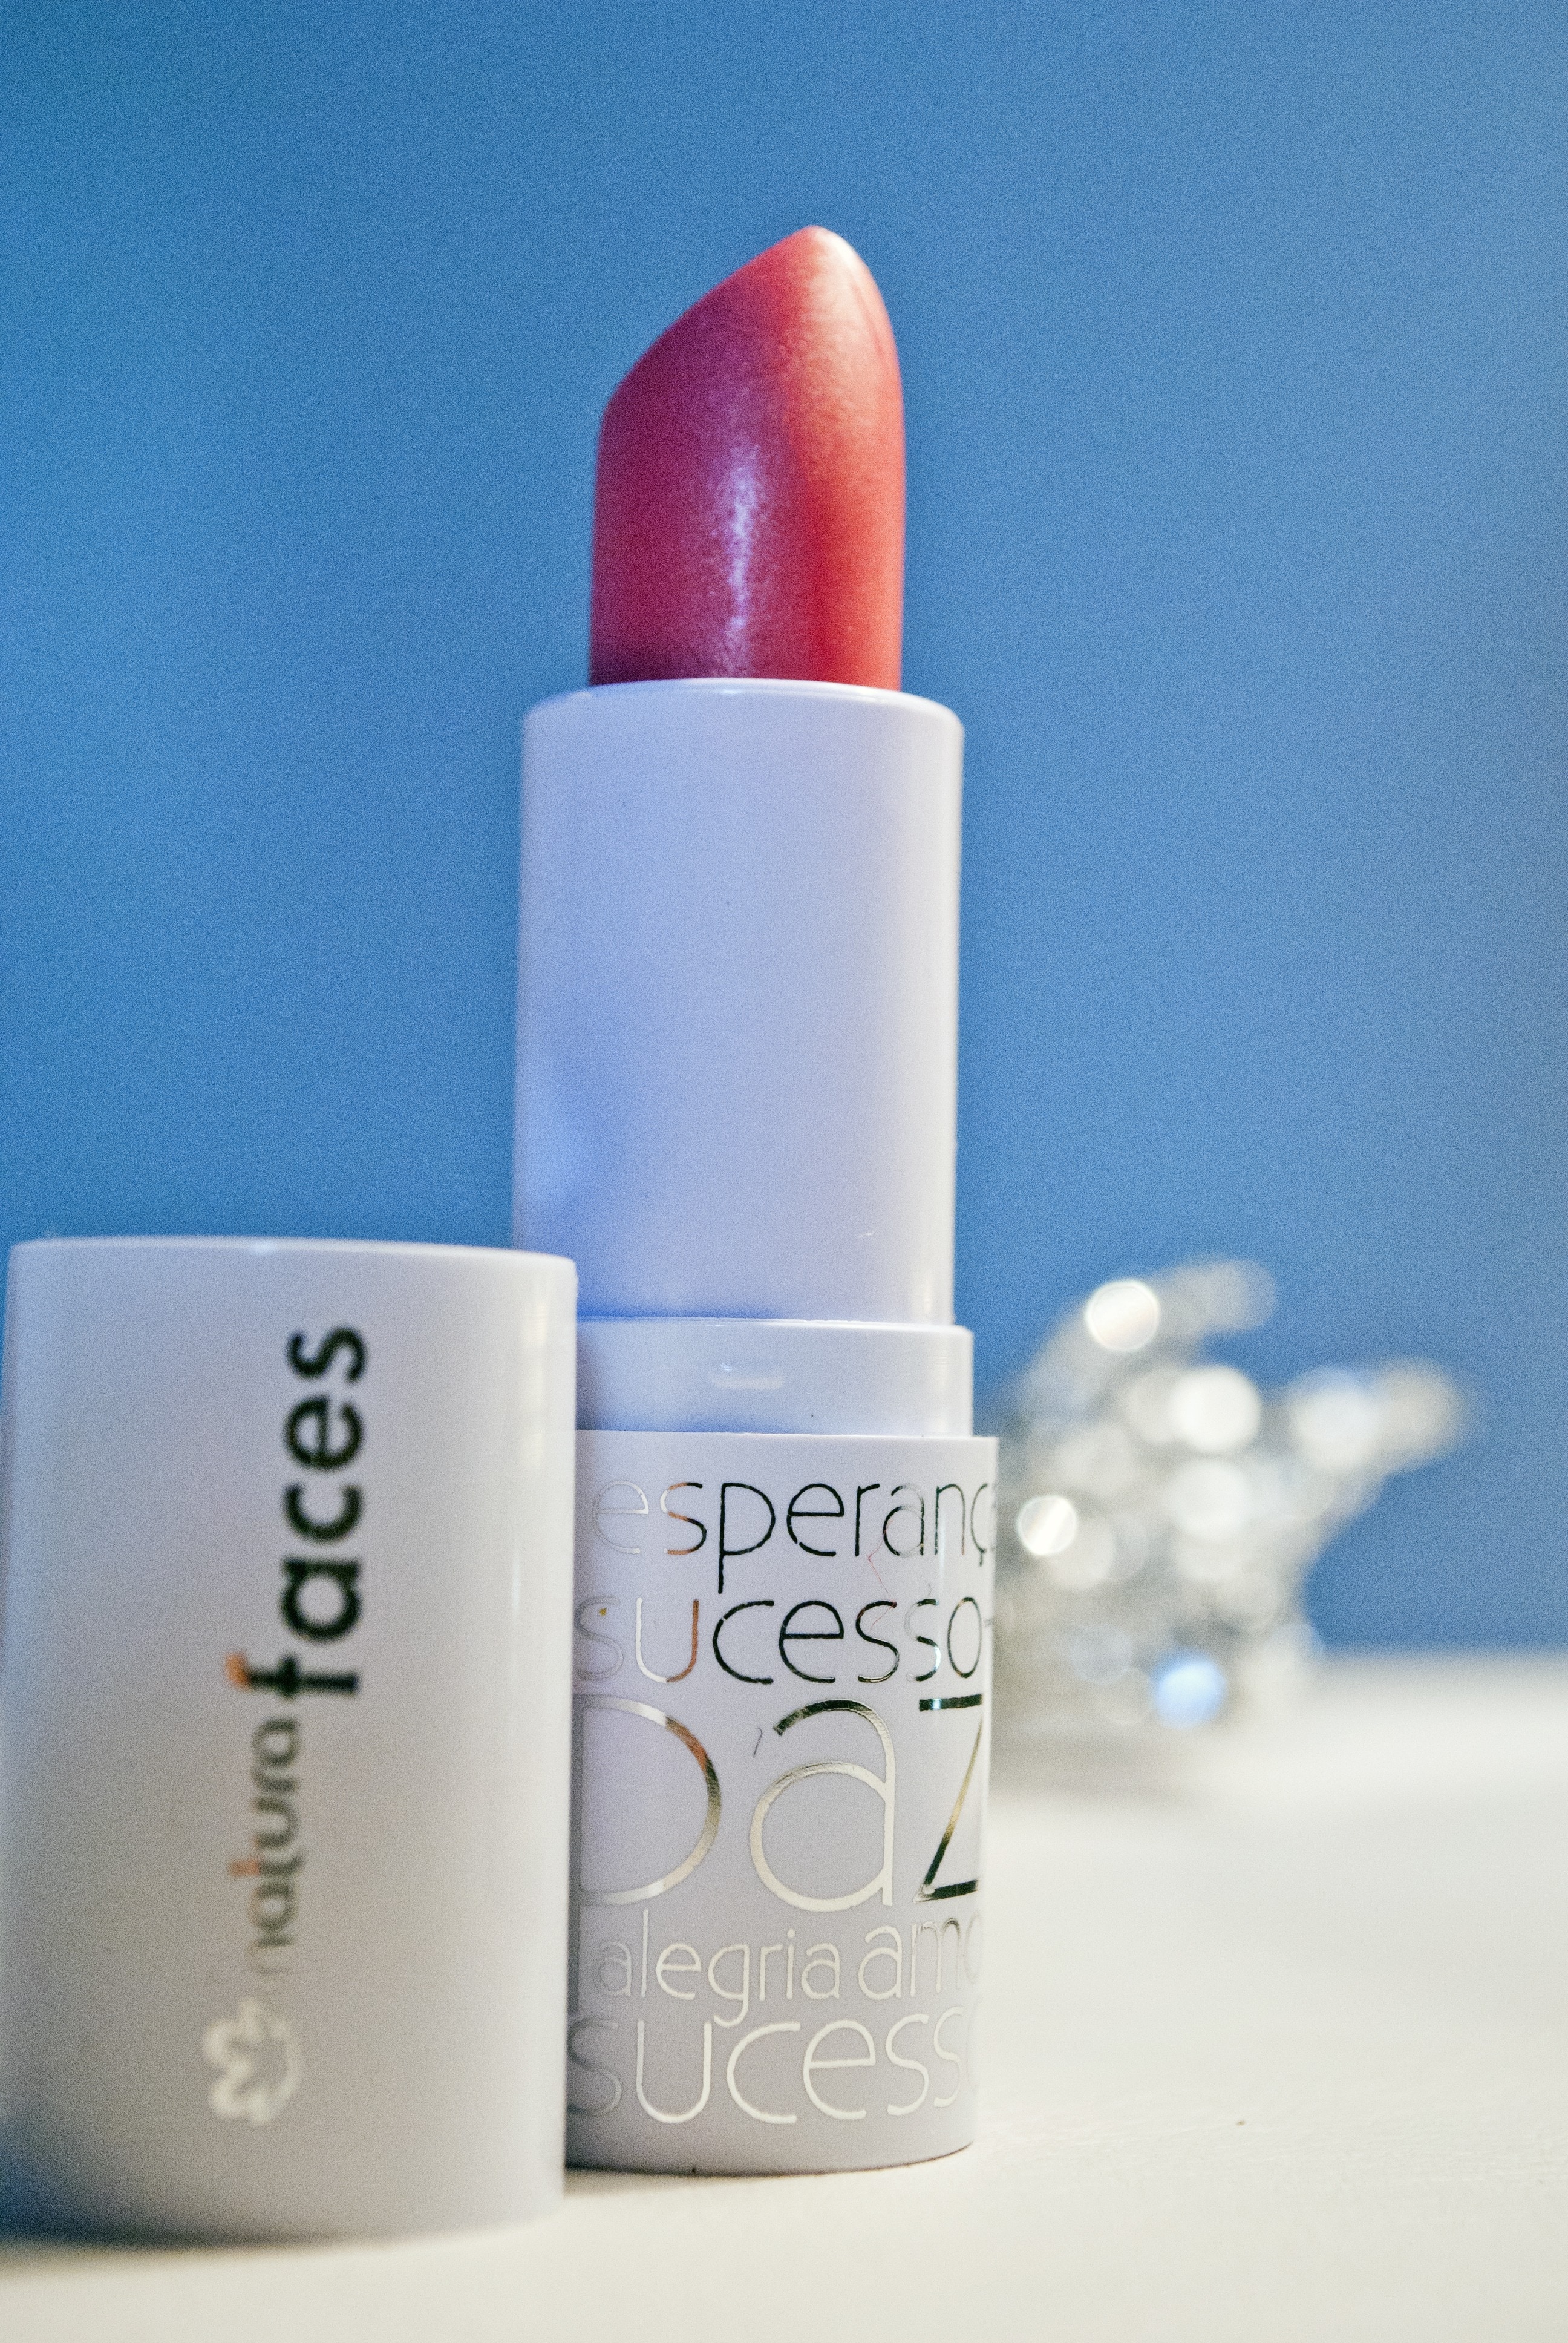 red esperano sucesso lipstick